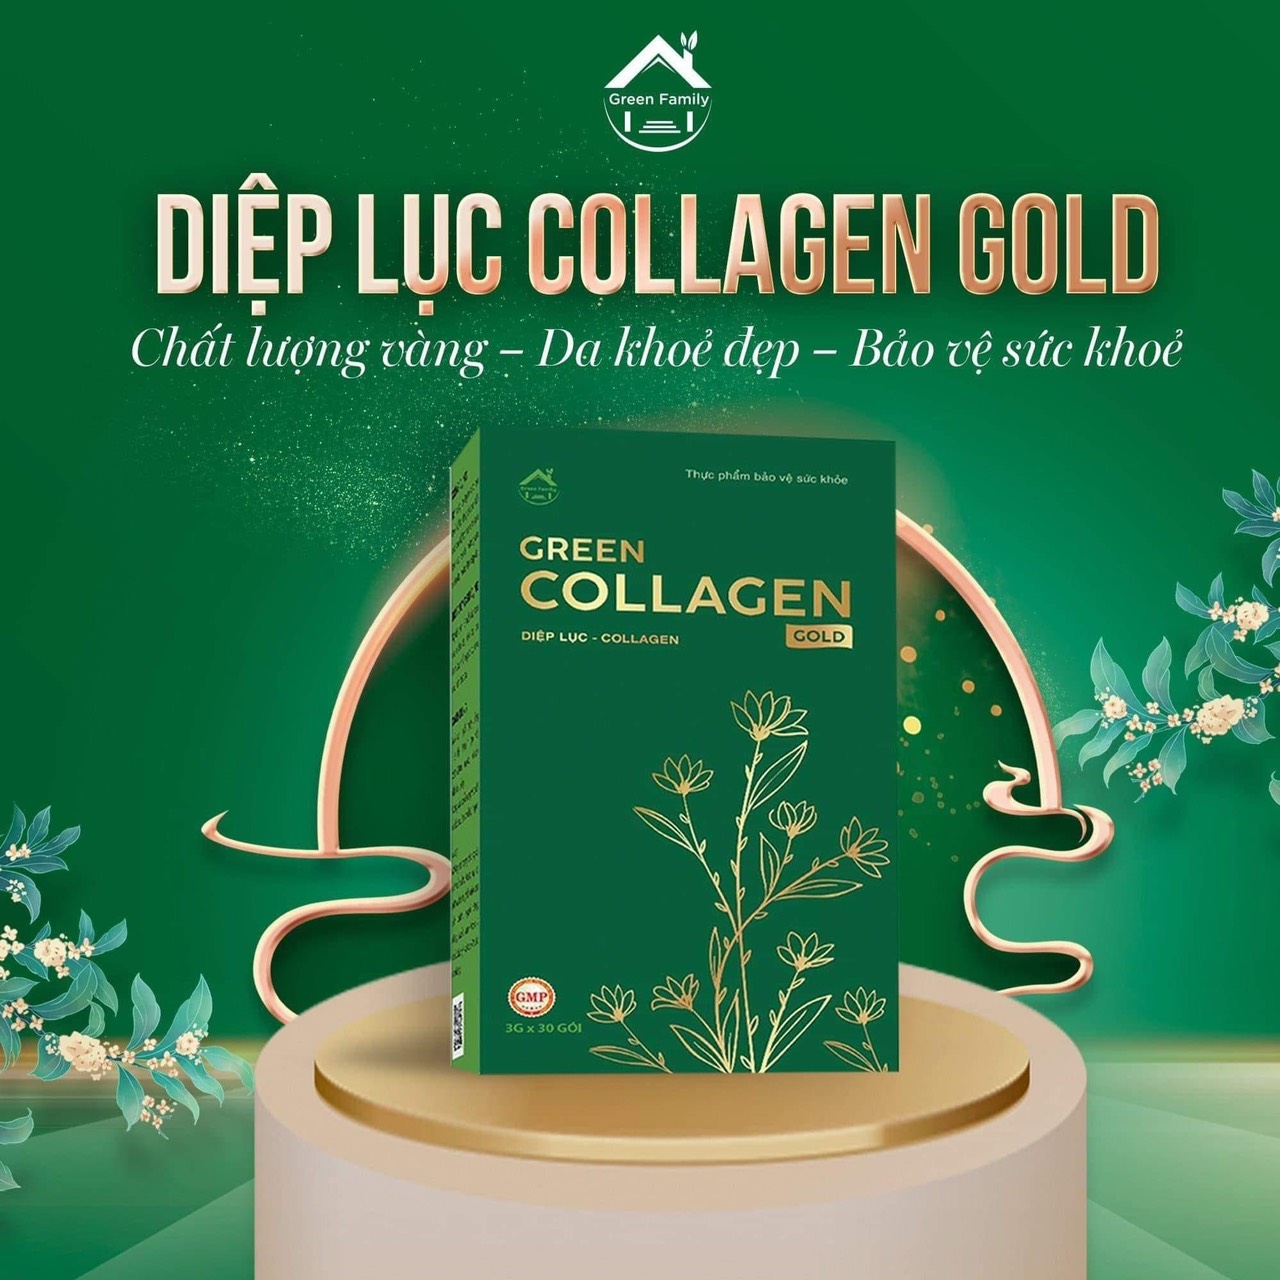 Green Collagen Gold có giúp làm đẹp da không?
